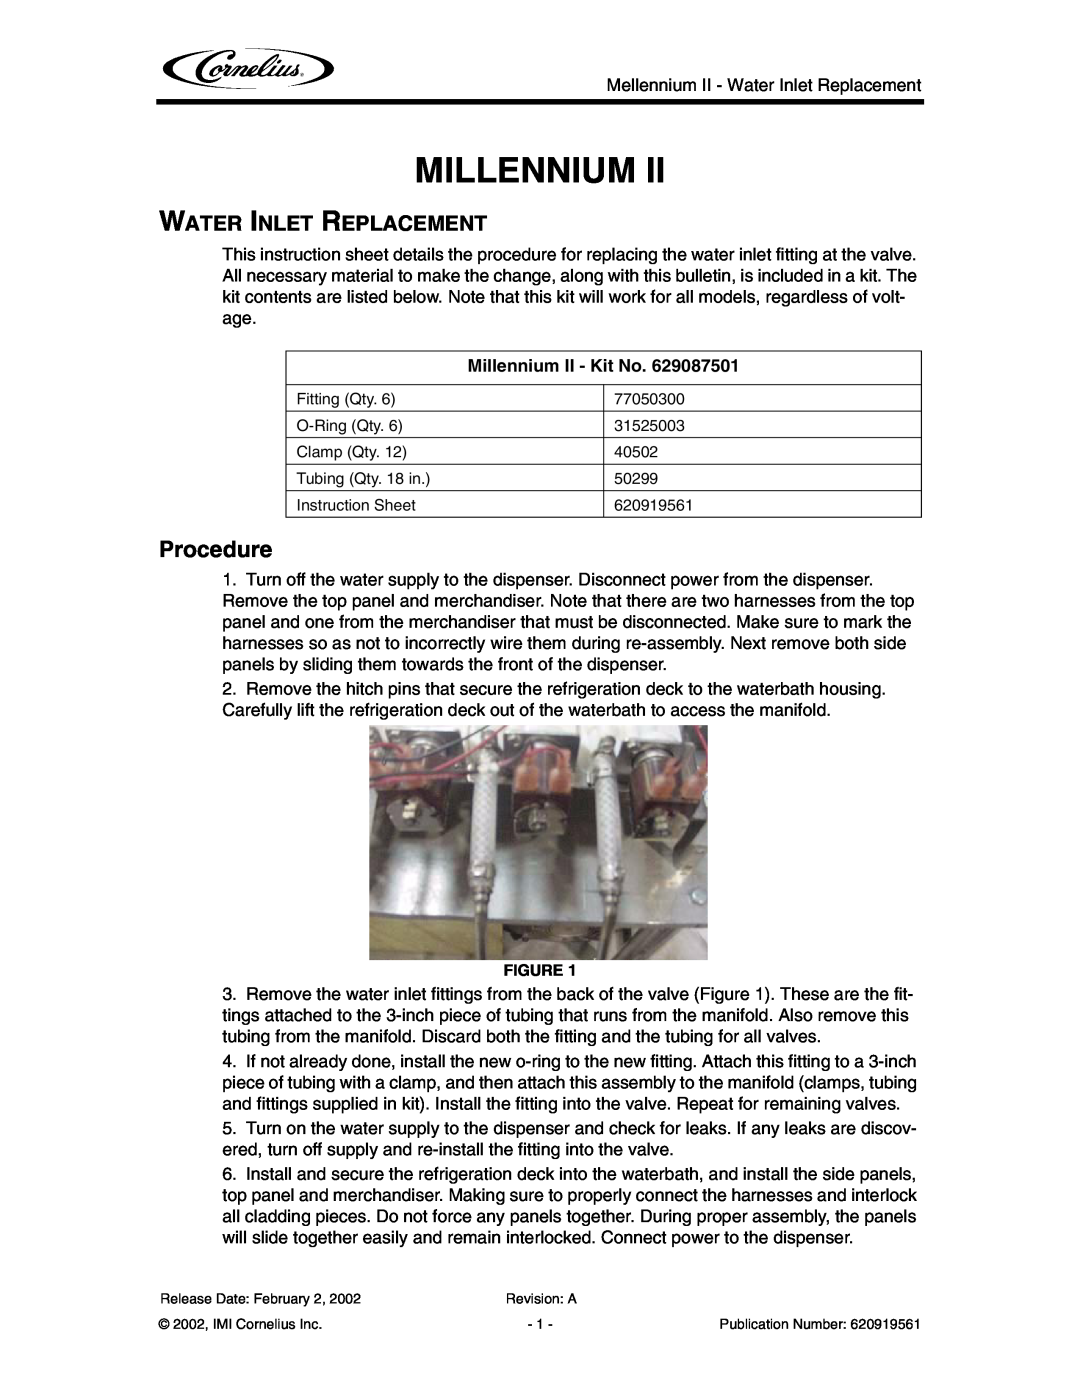 Cornelius 6 Flavor instruction sheet Procedure, Water Inlet Replacement, Millennium II - Kit No 